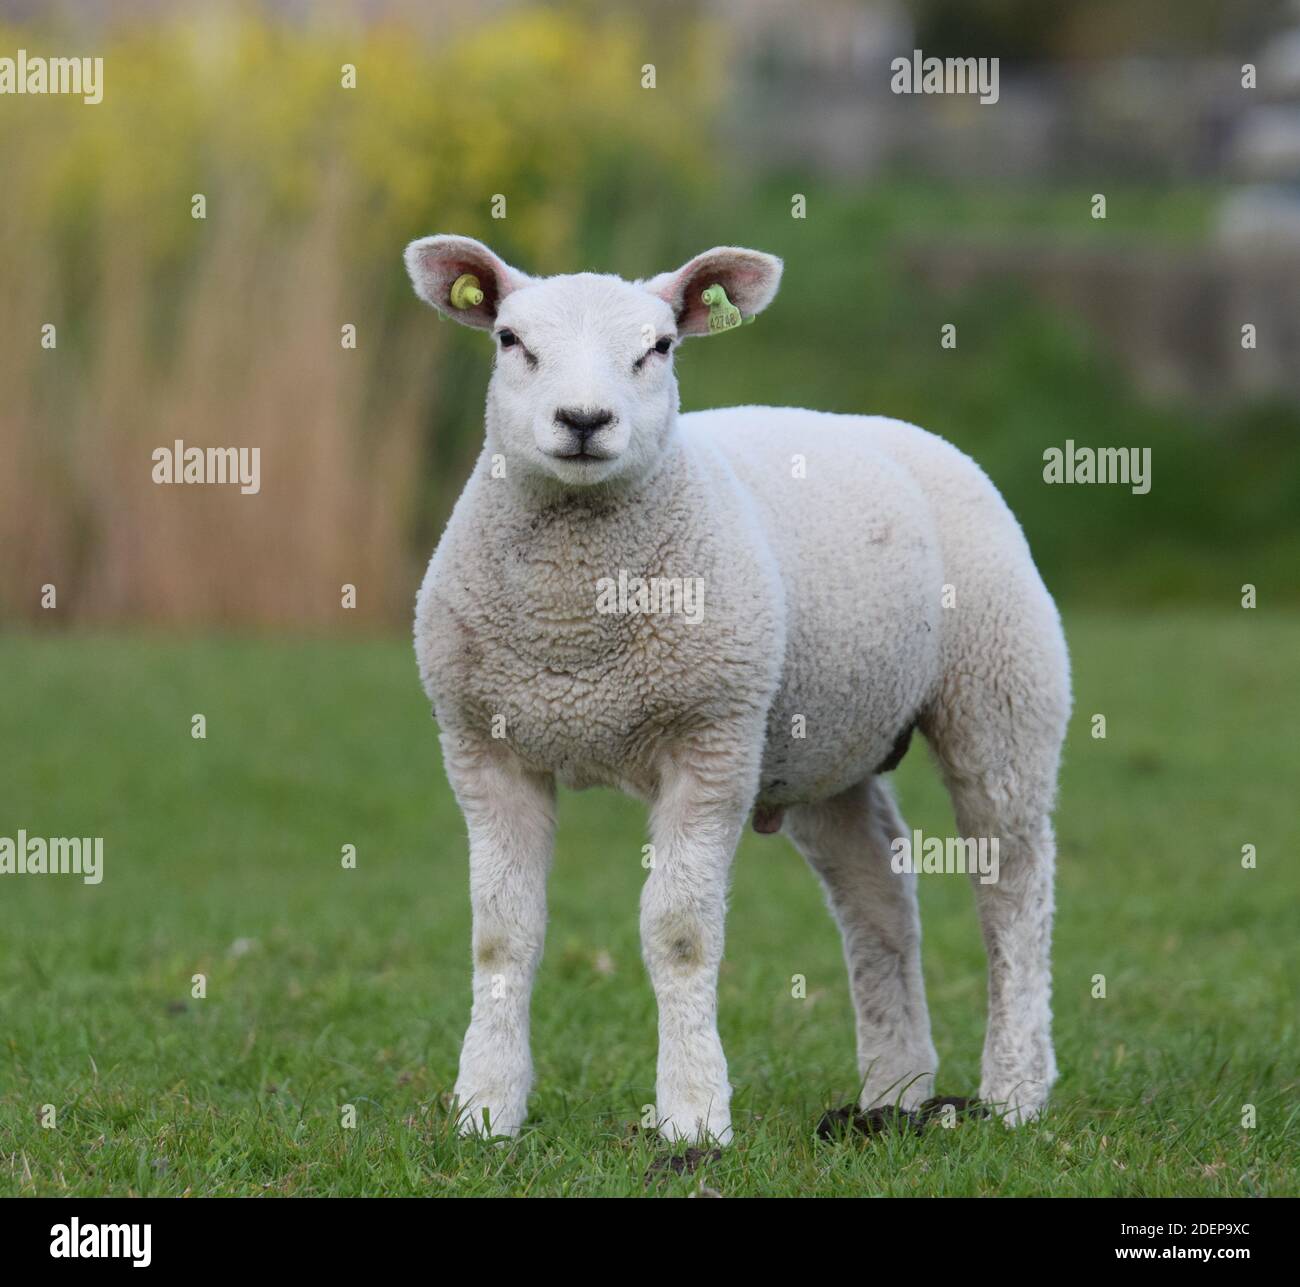 Ram Lamb Stock Photo